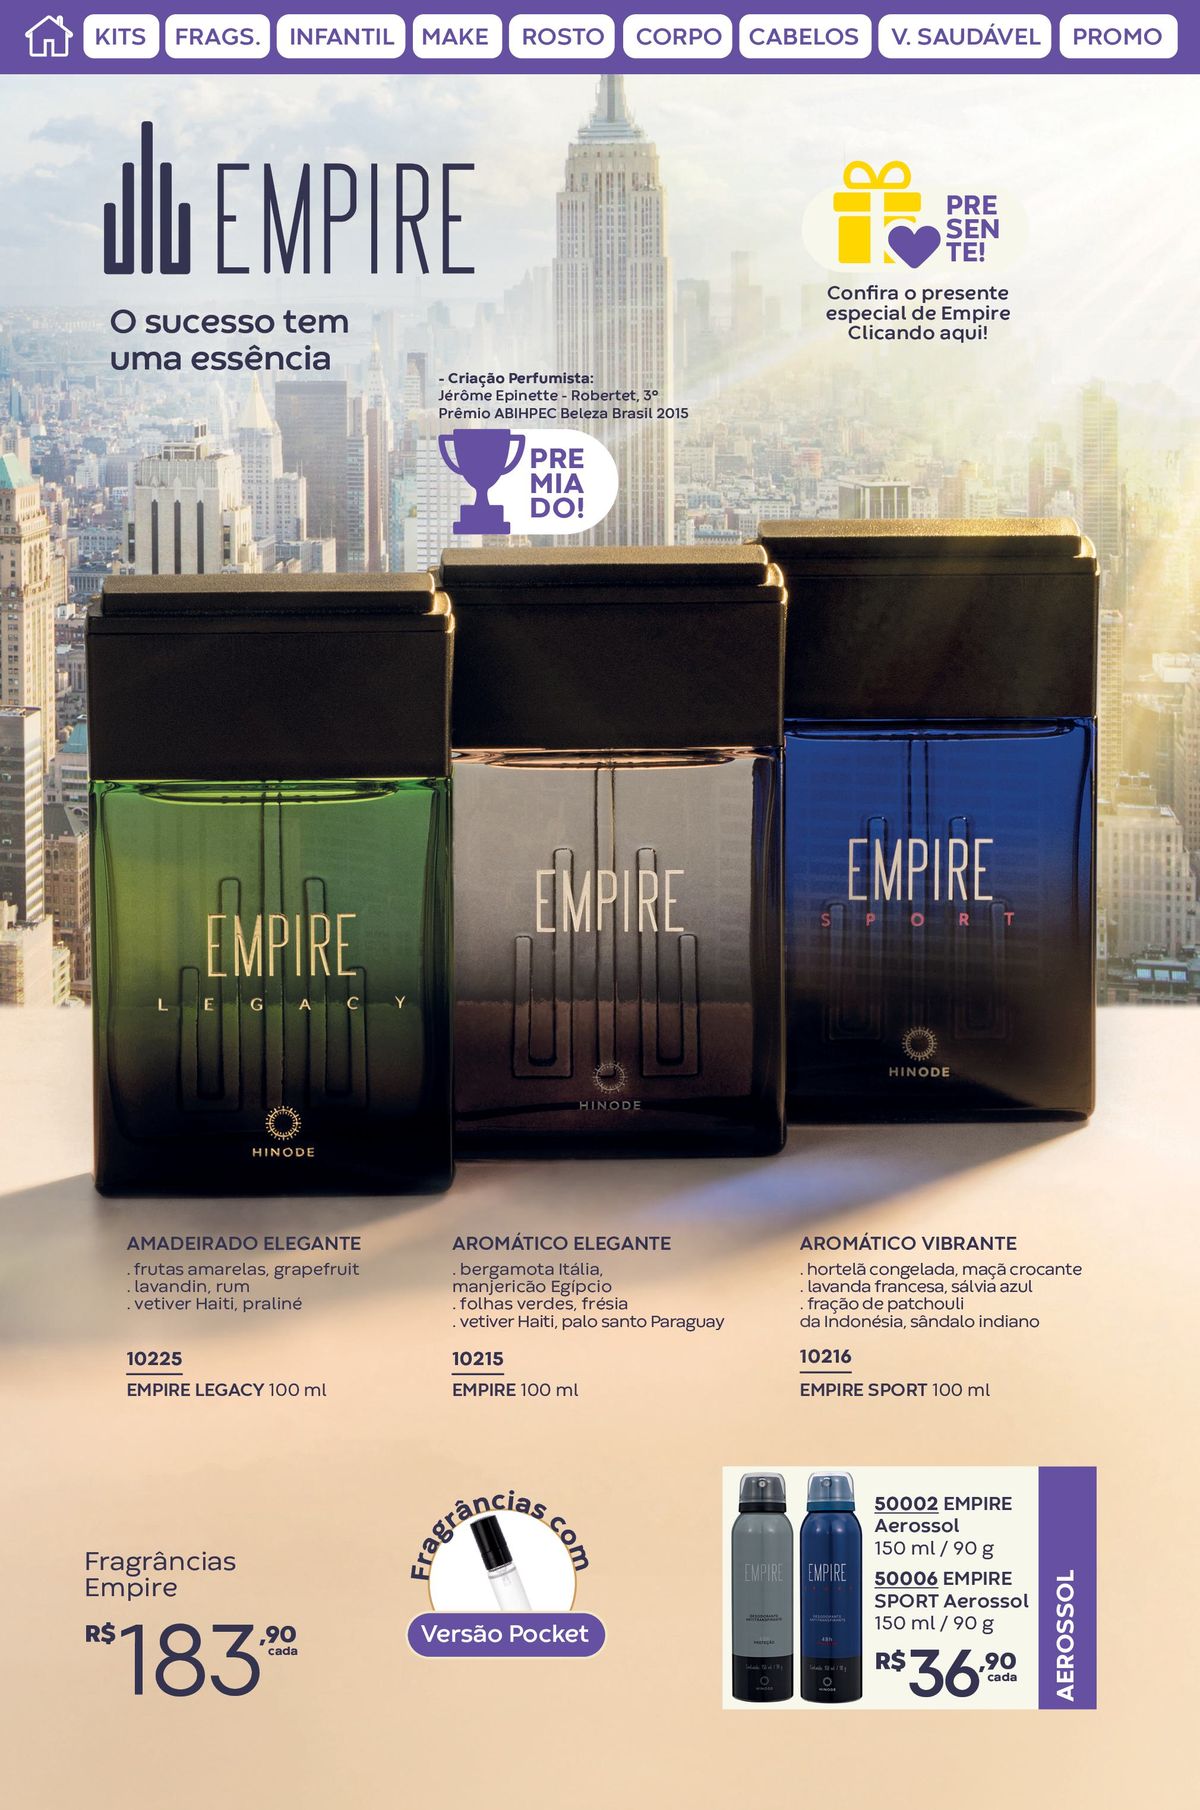 Perfumes Empire com fragrâncias elegantes e vibrantes